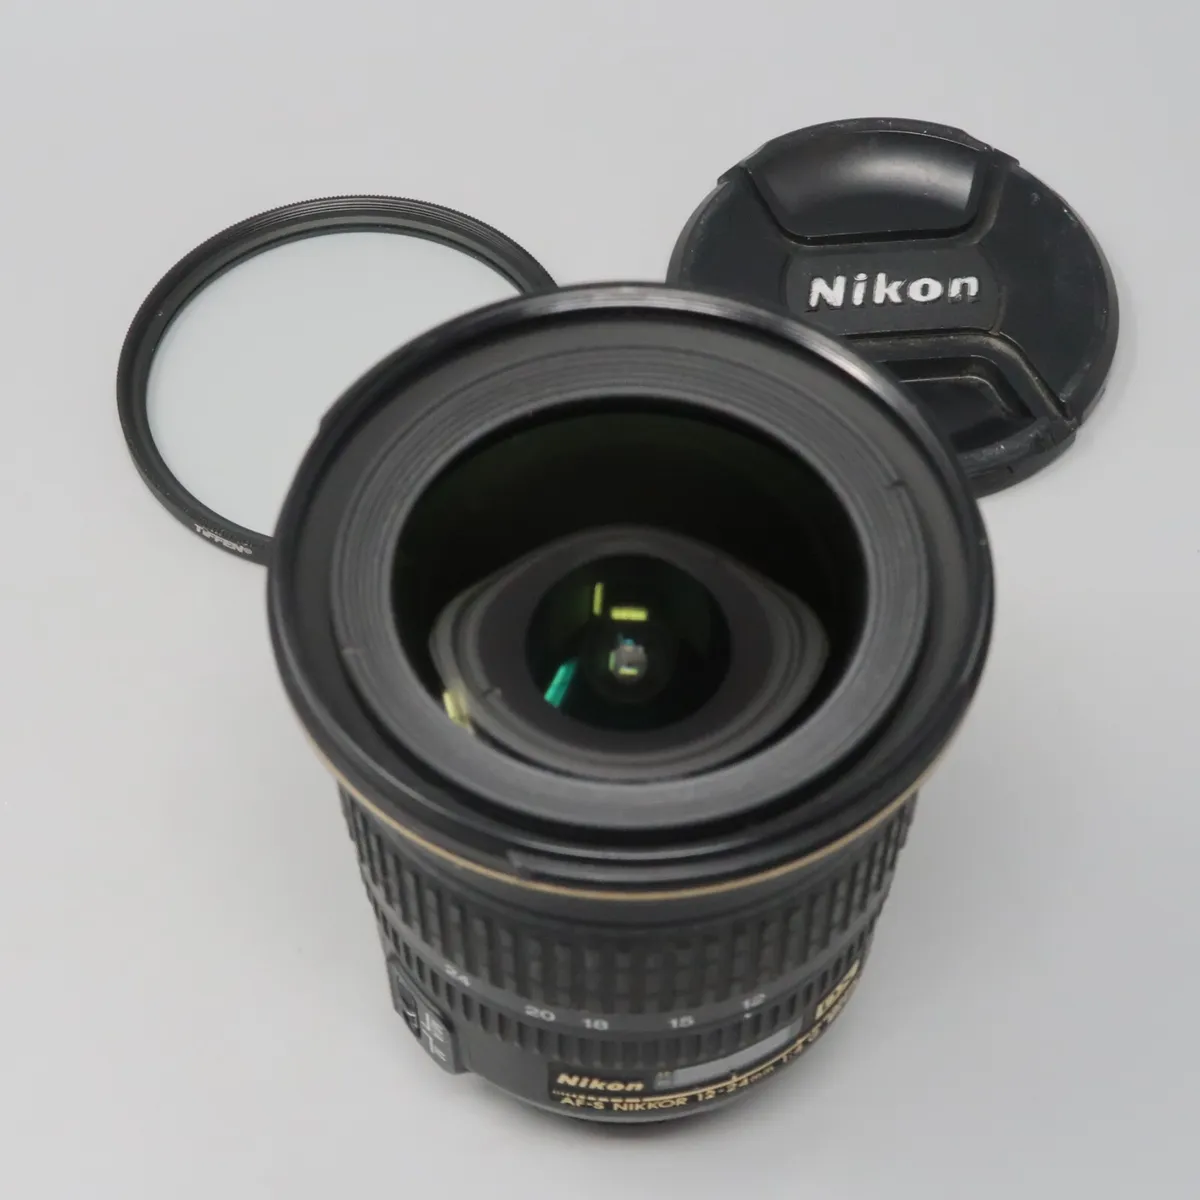 Nikon AF-S DX NIKKOR 12-24mm f/4G IF-ED Zoom Lens with Auto Focus